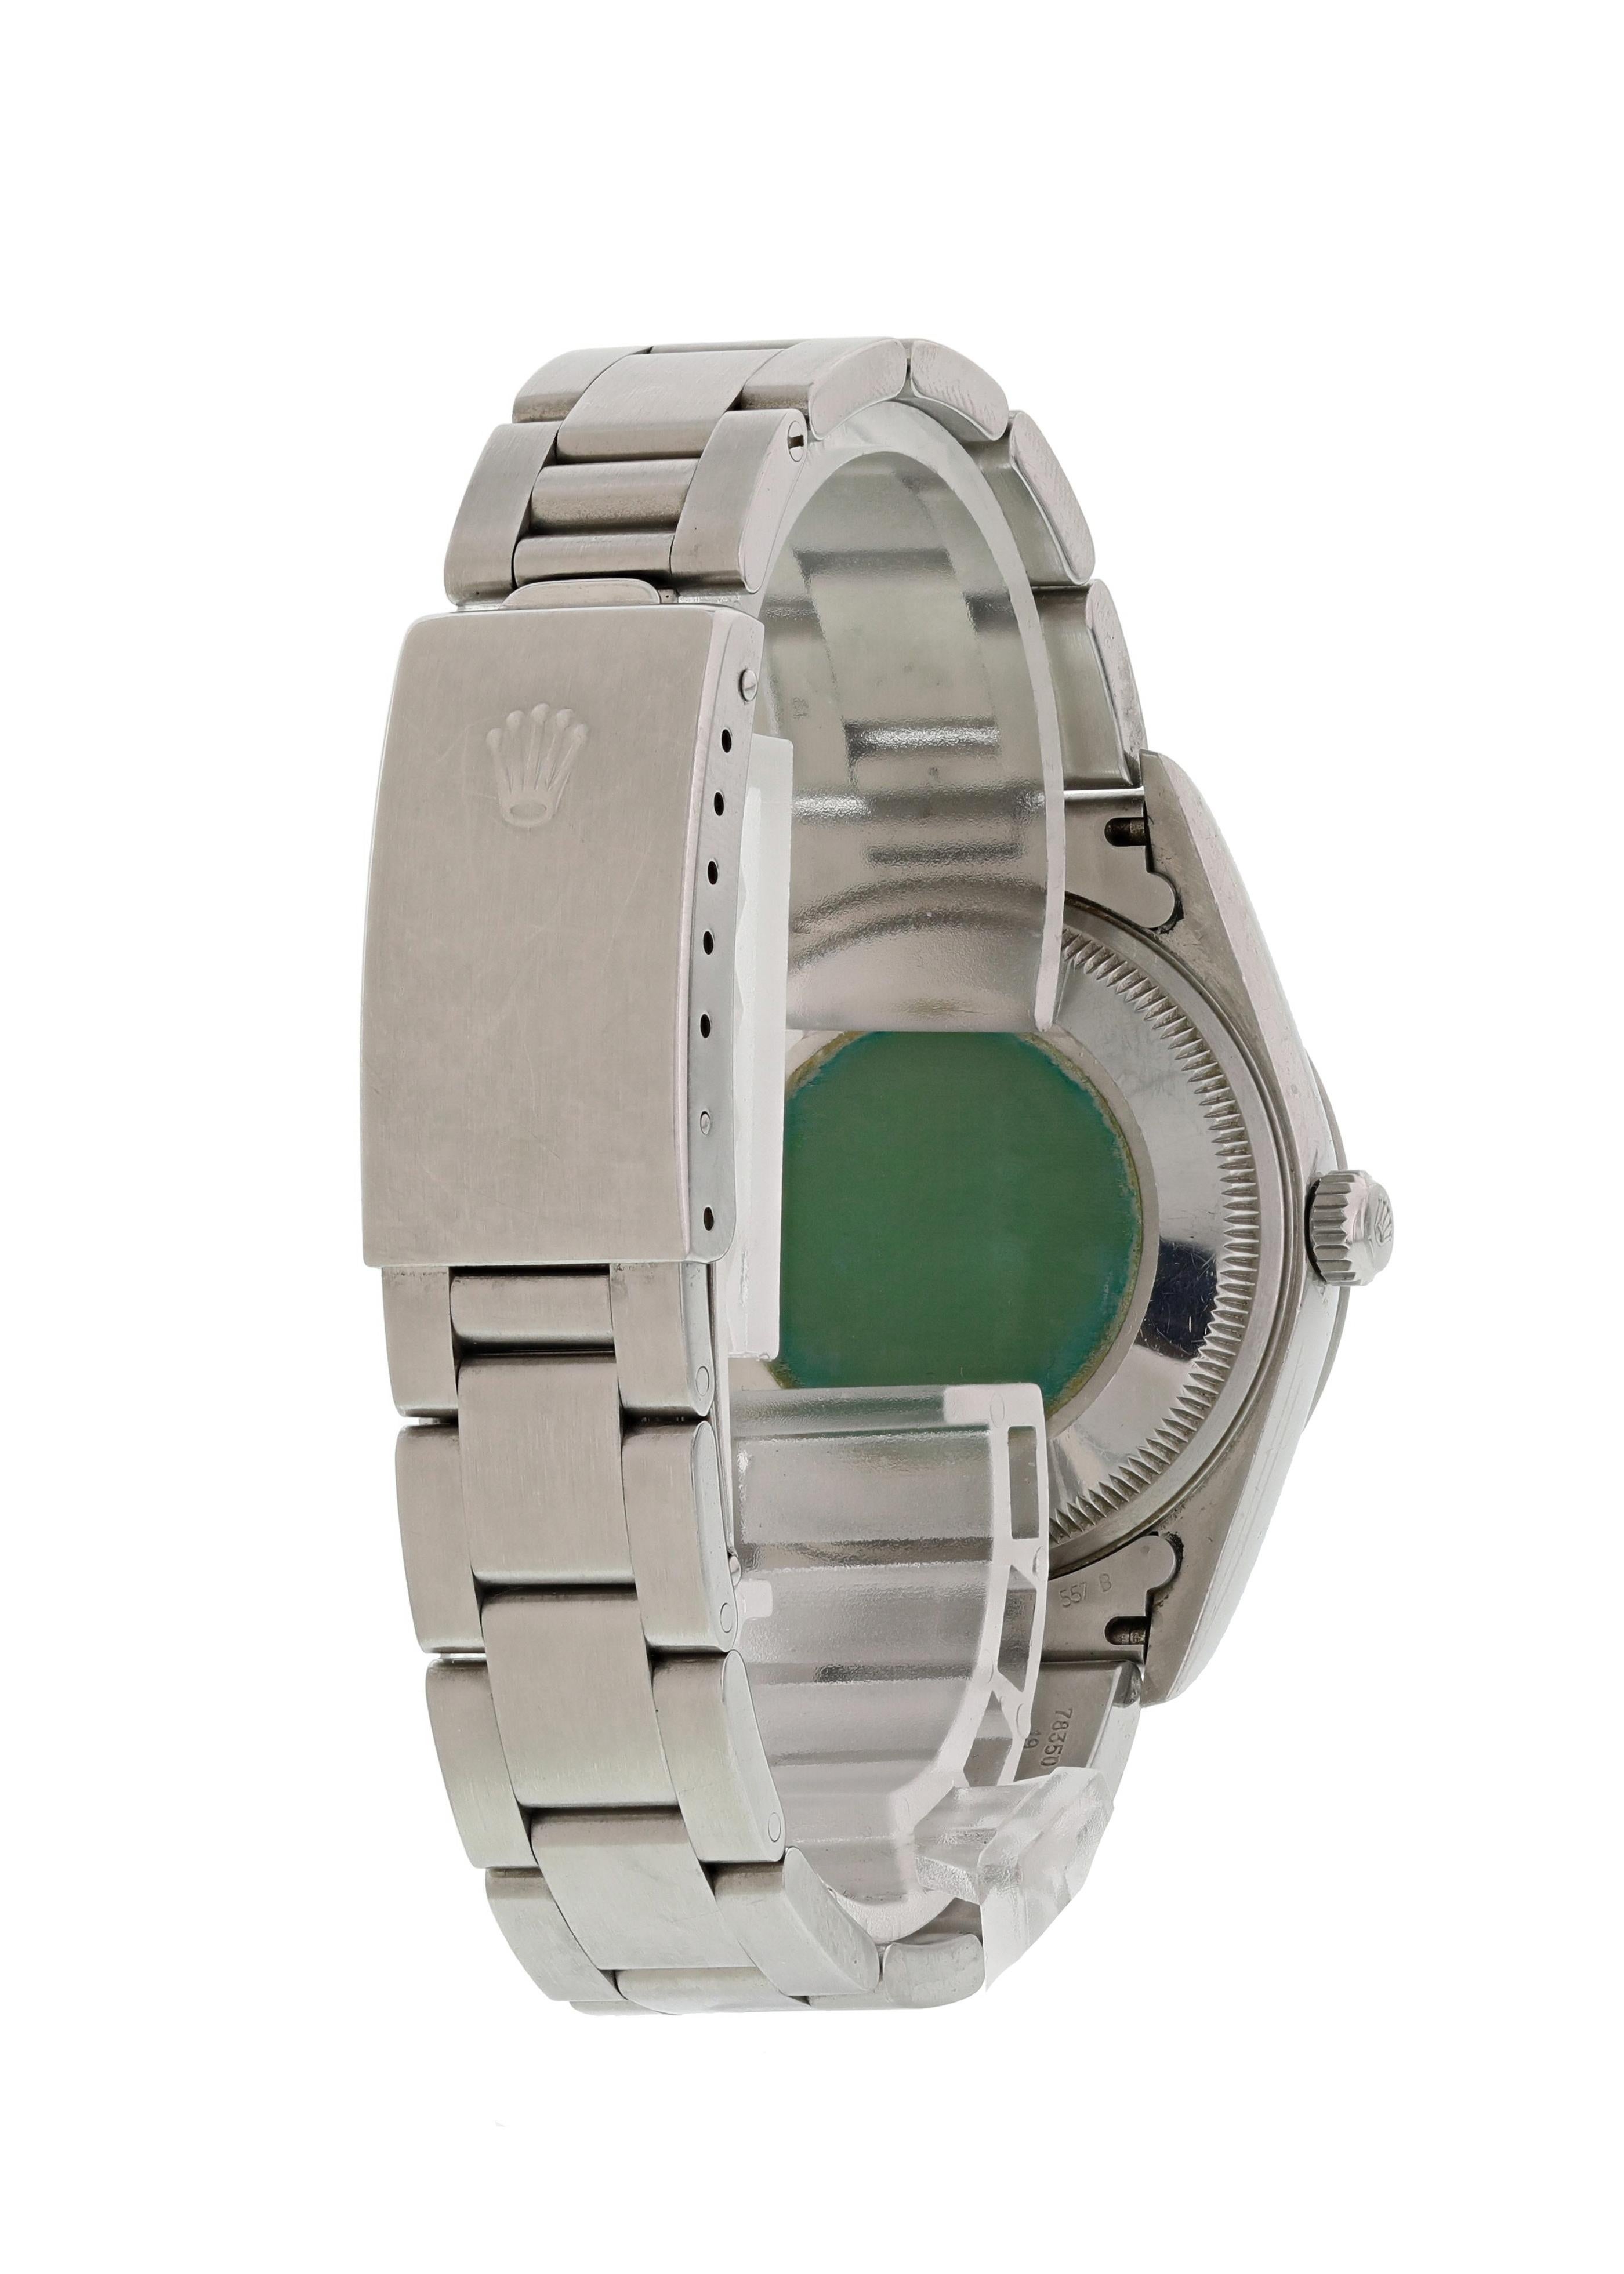 Rolex Oyster Perpetual Date 15200 Men's Watch Original Papers Herren